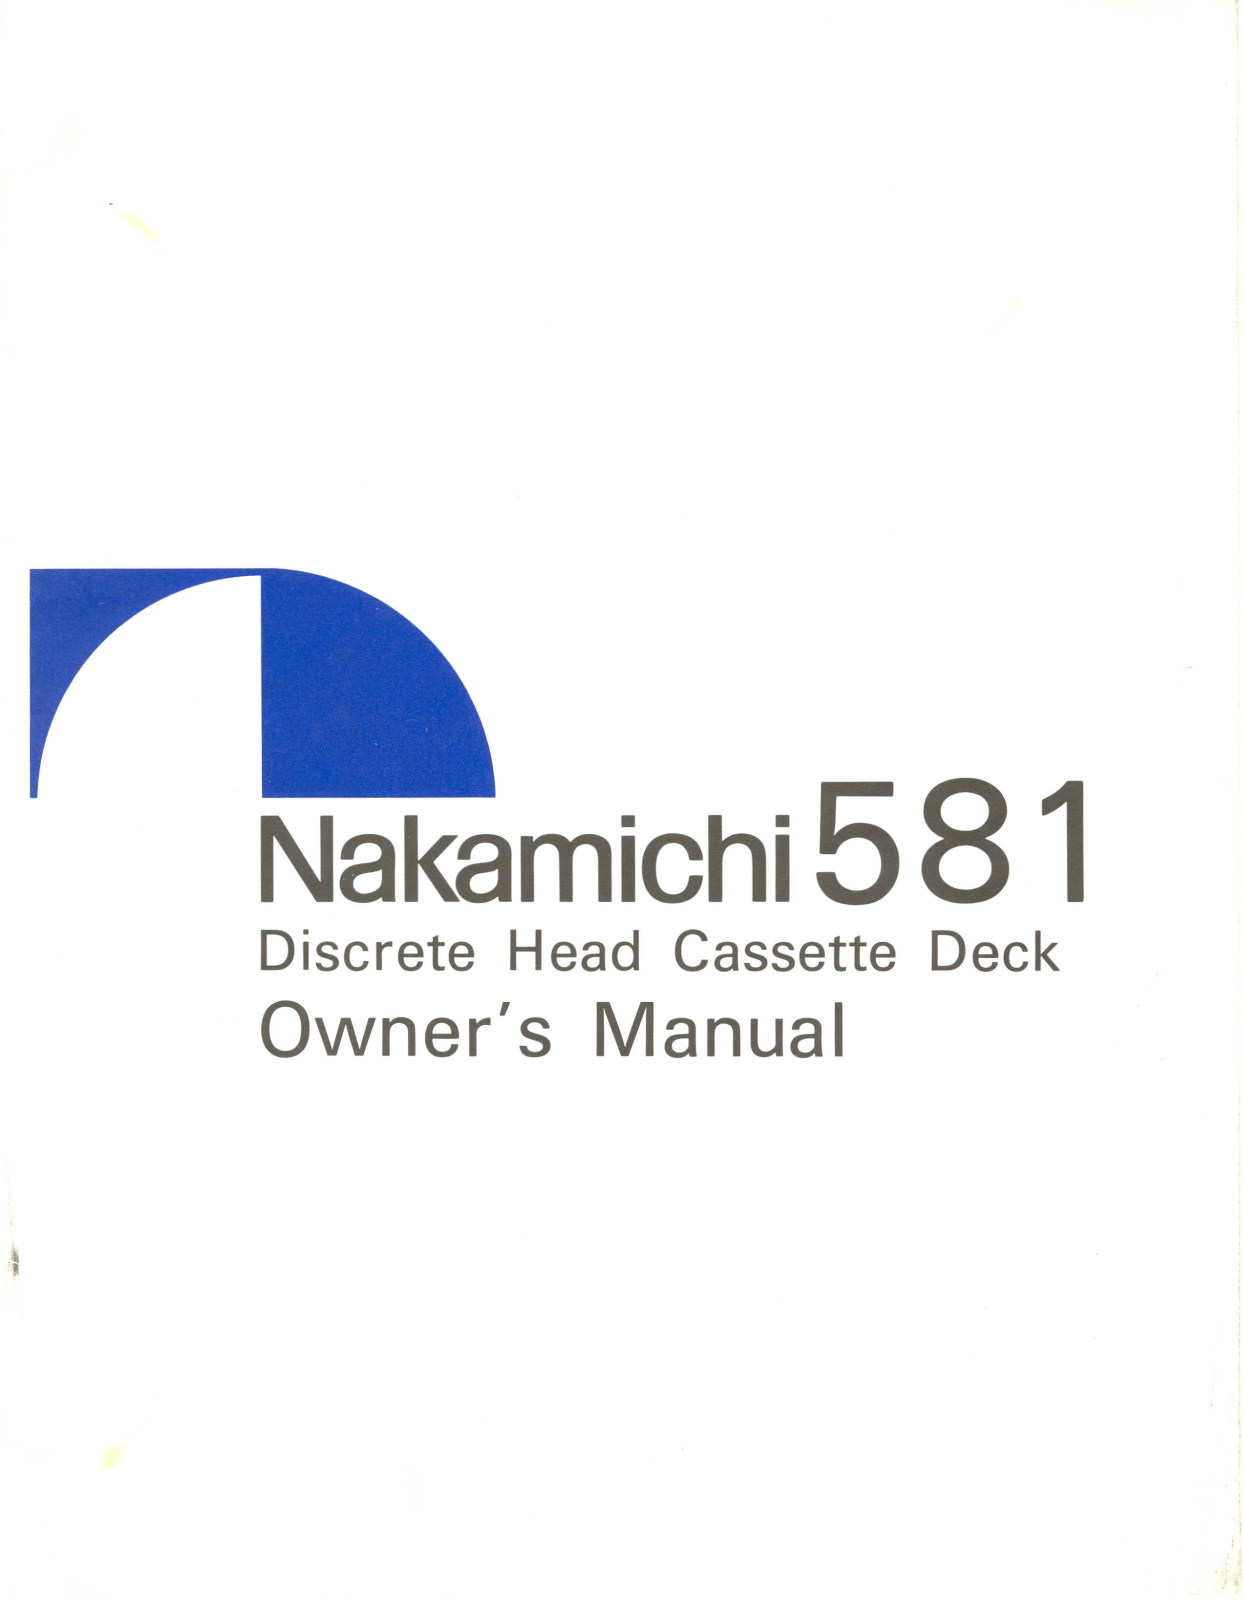 Nakamichi 581 Owners manual